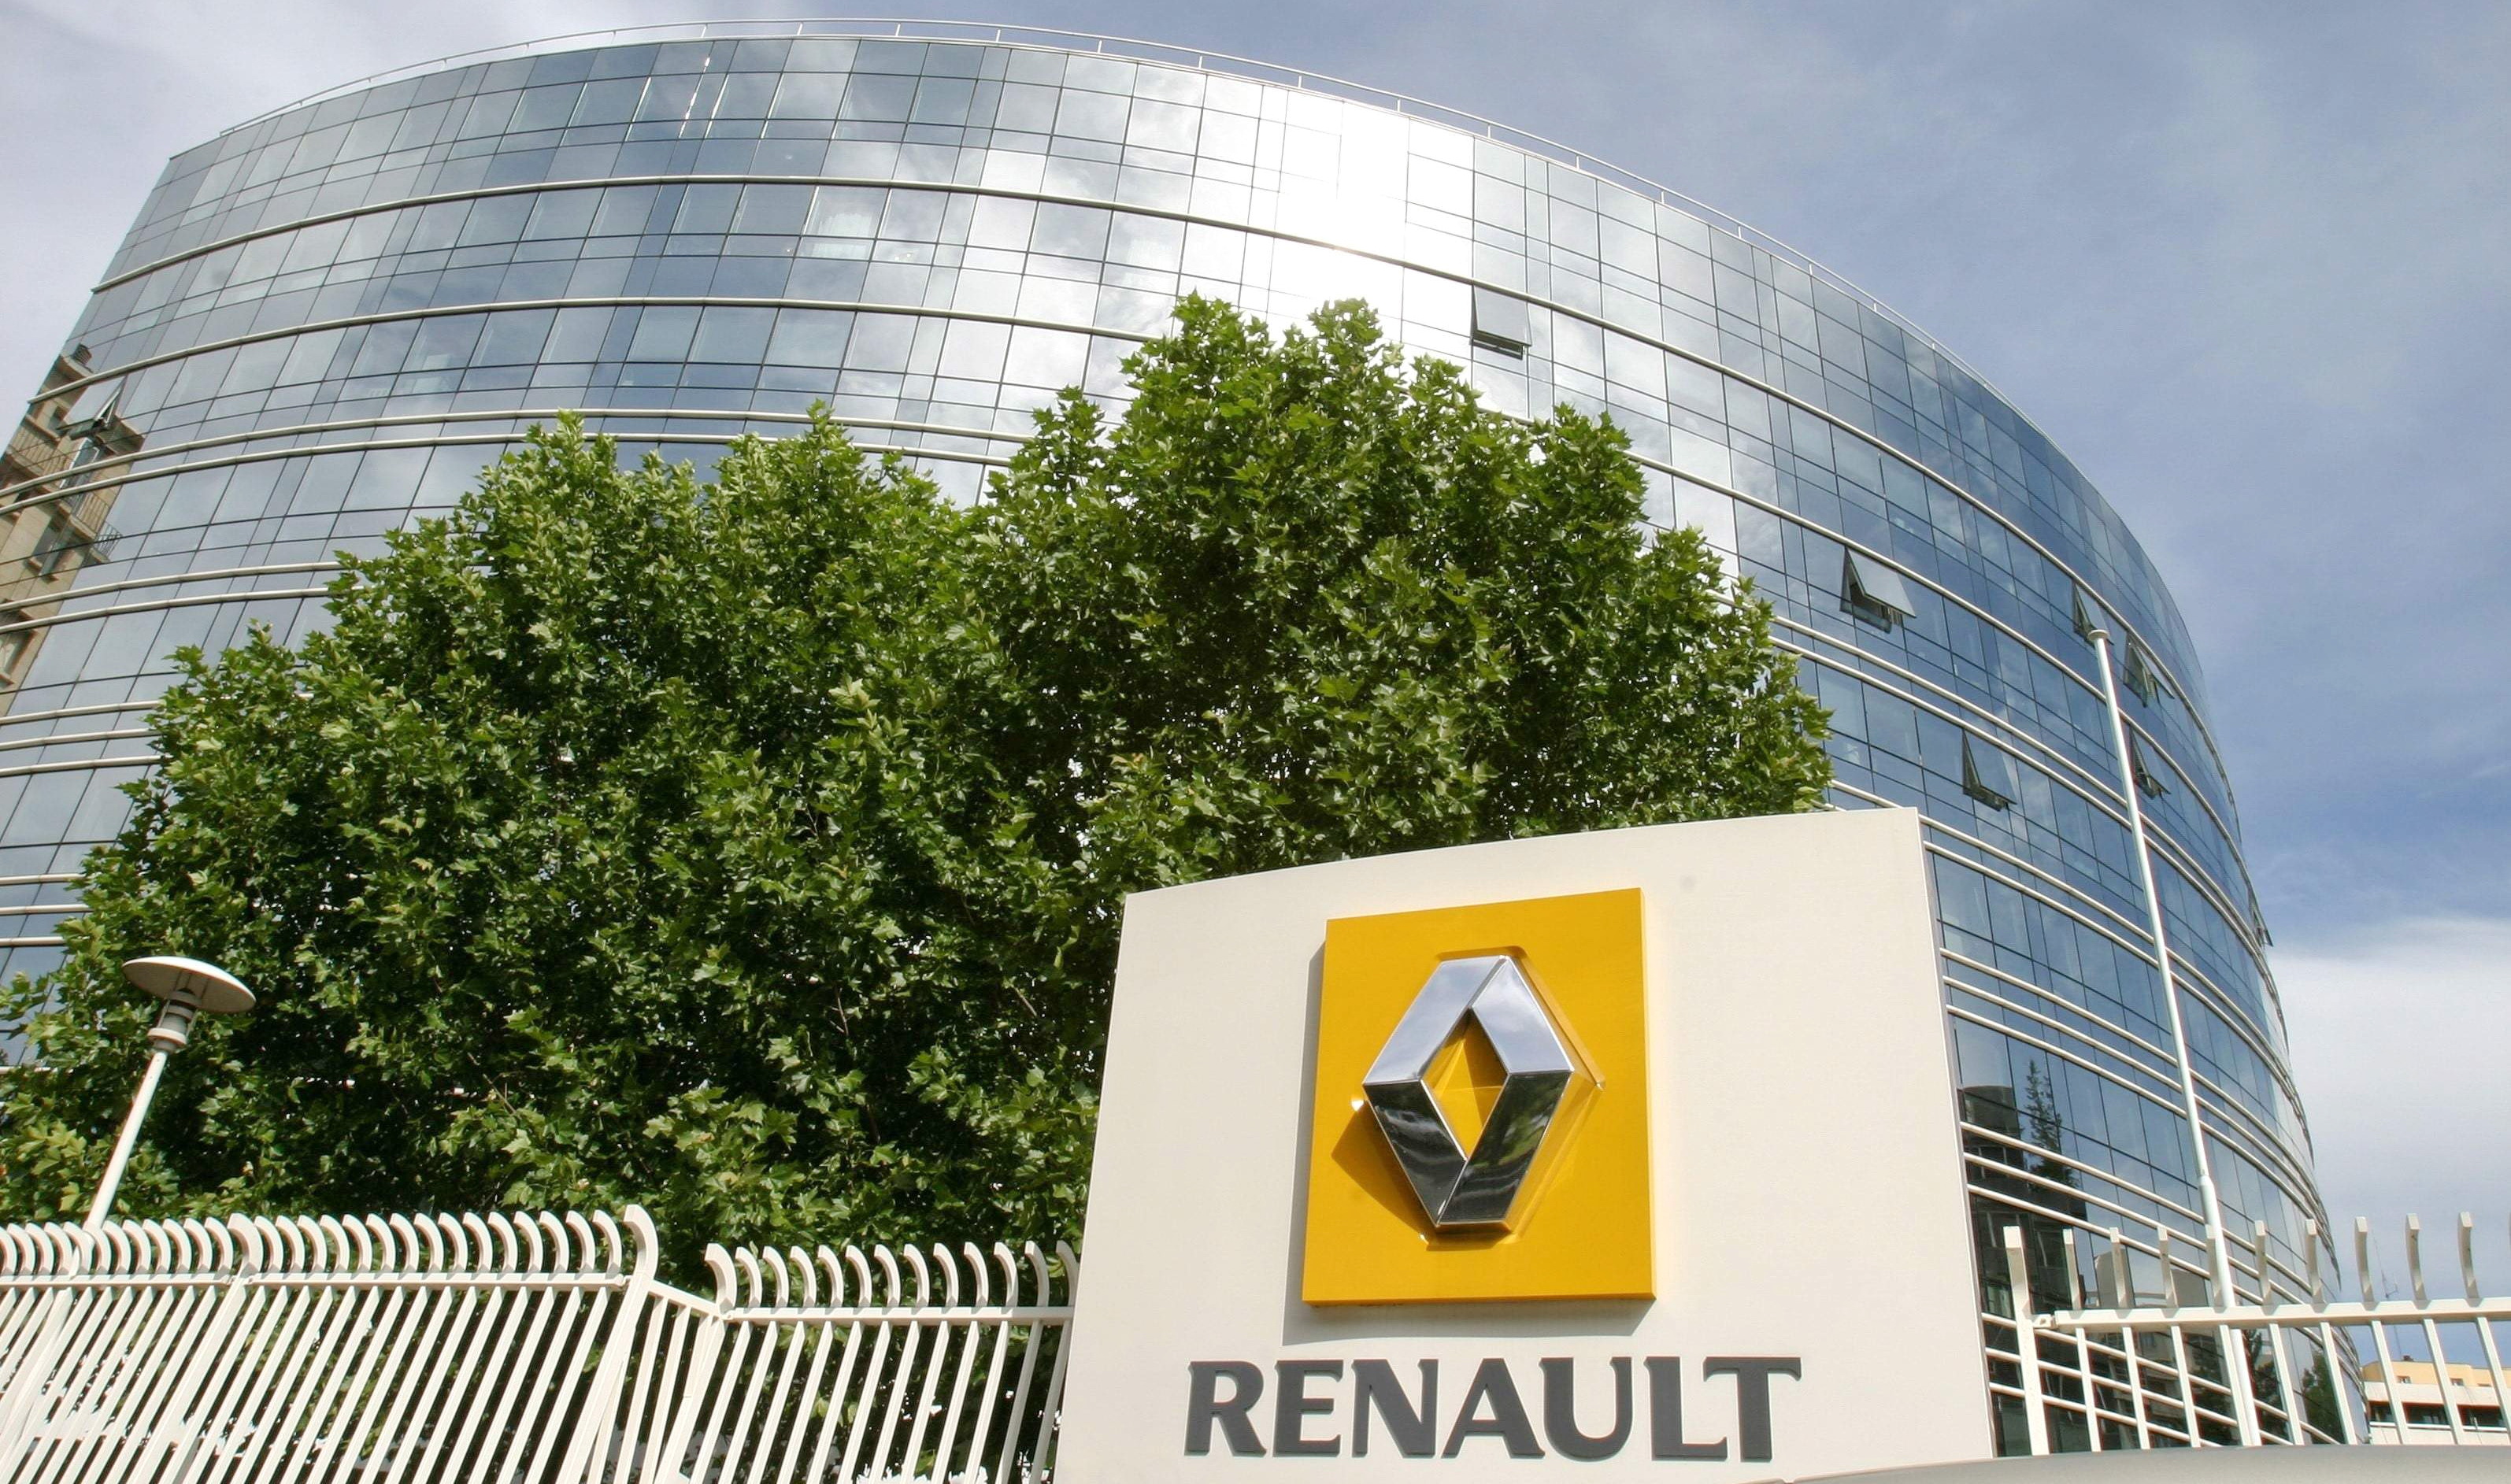 Француз завод. Штаб квартира Рено во Франции. Завод Renault во Франции. Завод Рено в Булонь-Бийанкур. Франция Рено штаб квартира Рено.